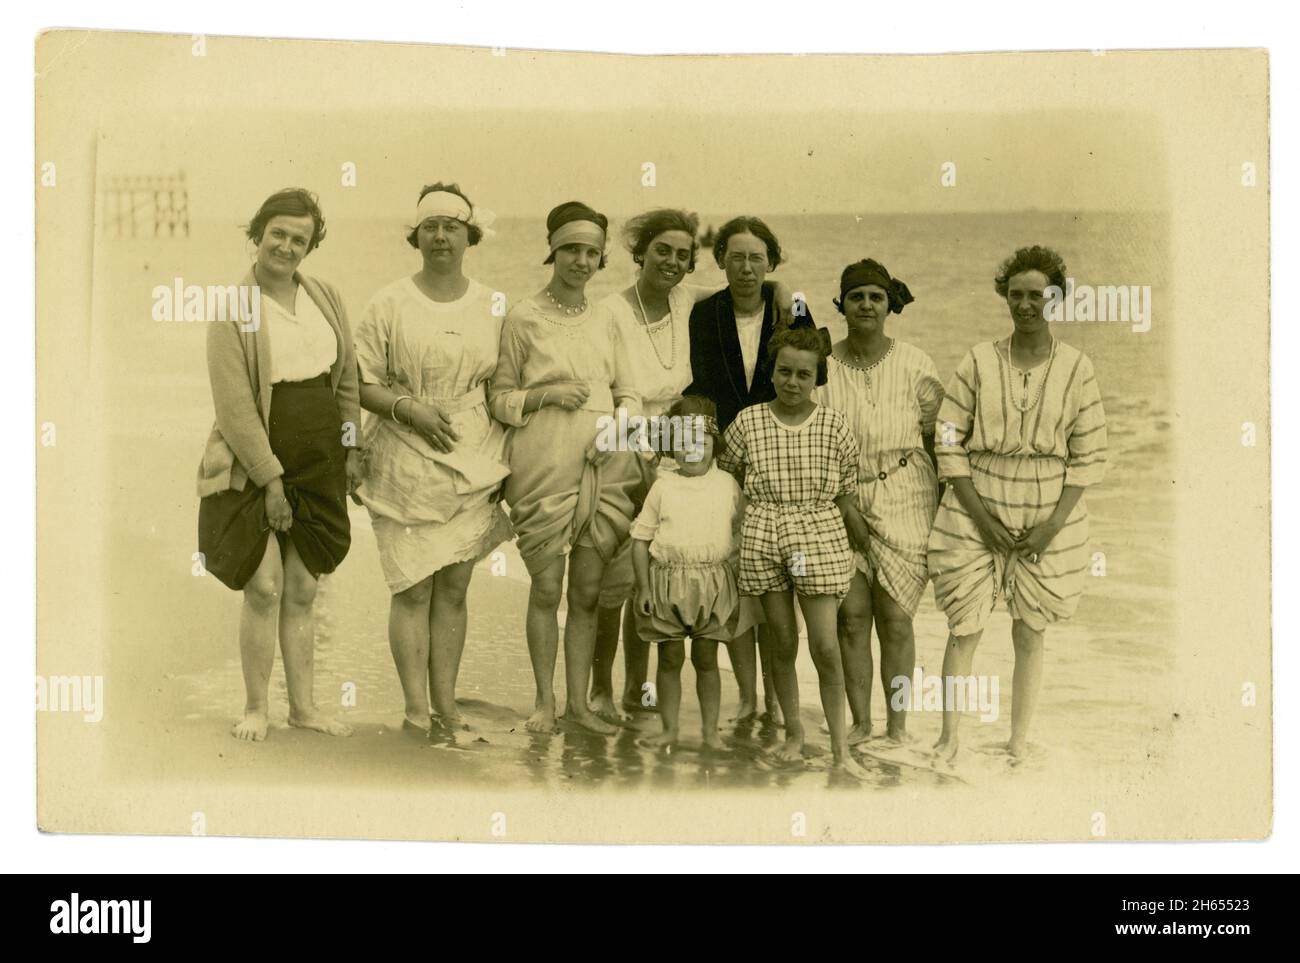 Carte postale originale très claire de l'époque des années 1920 avec des baigneurs à la mode, des femmes et des filles attrayantes, des bandeaux et coiffures à la mode, station balnéaire britannique, jetée en arrière-plan, Royaume-Uni Banque D'Images